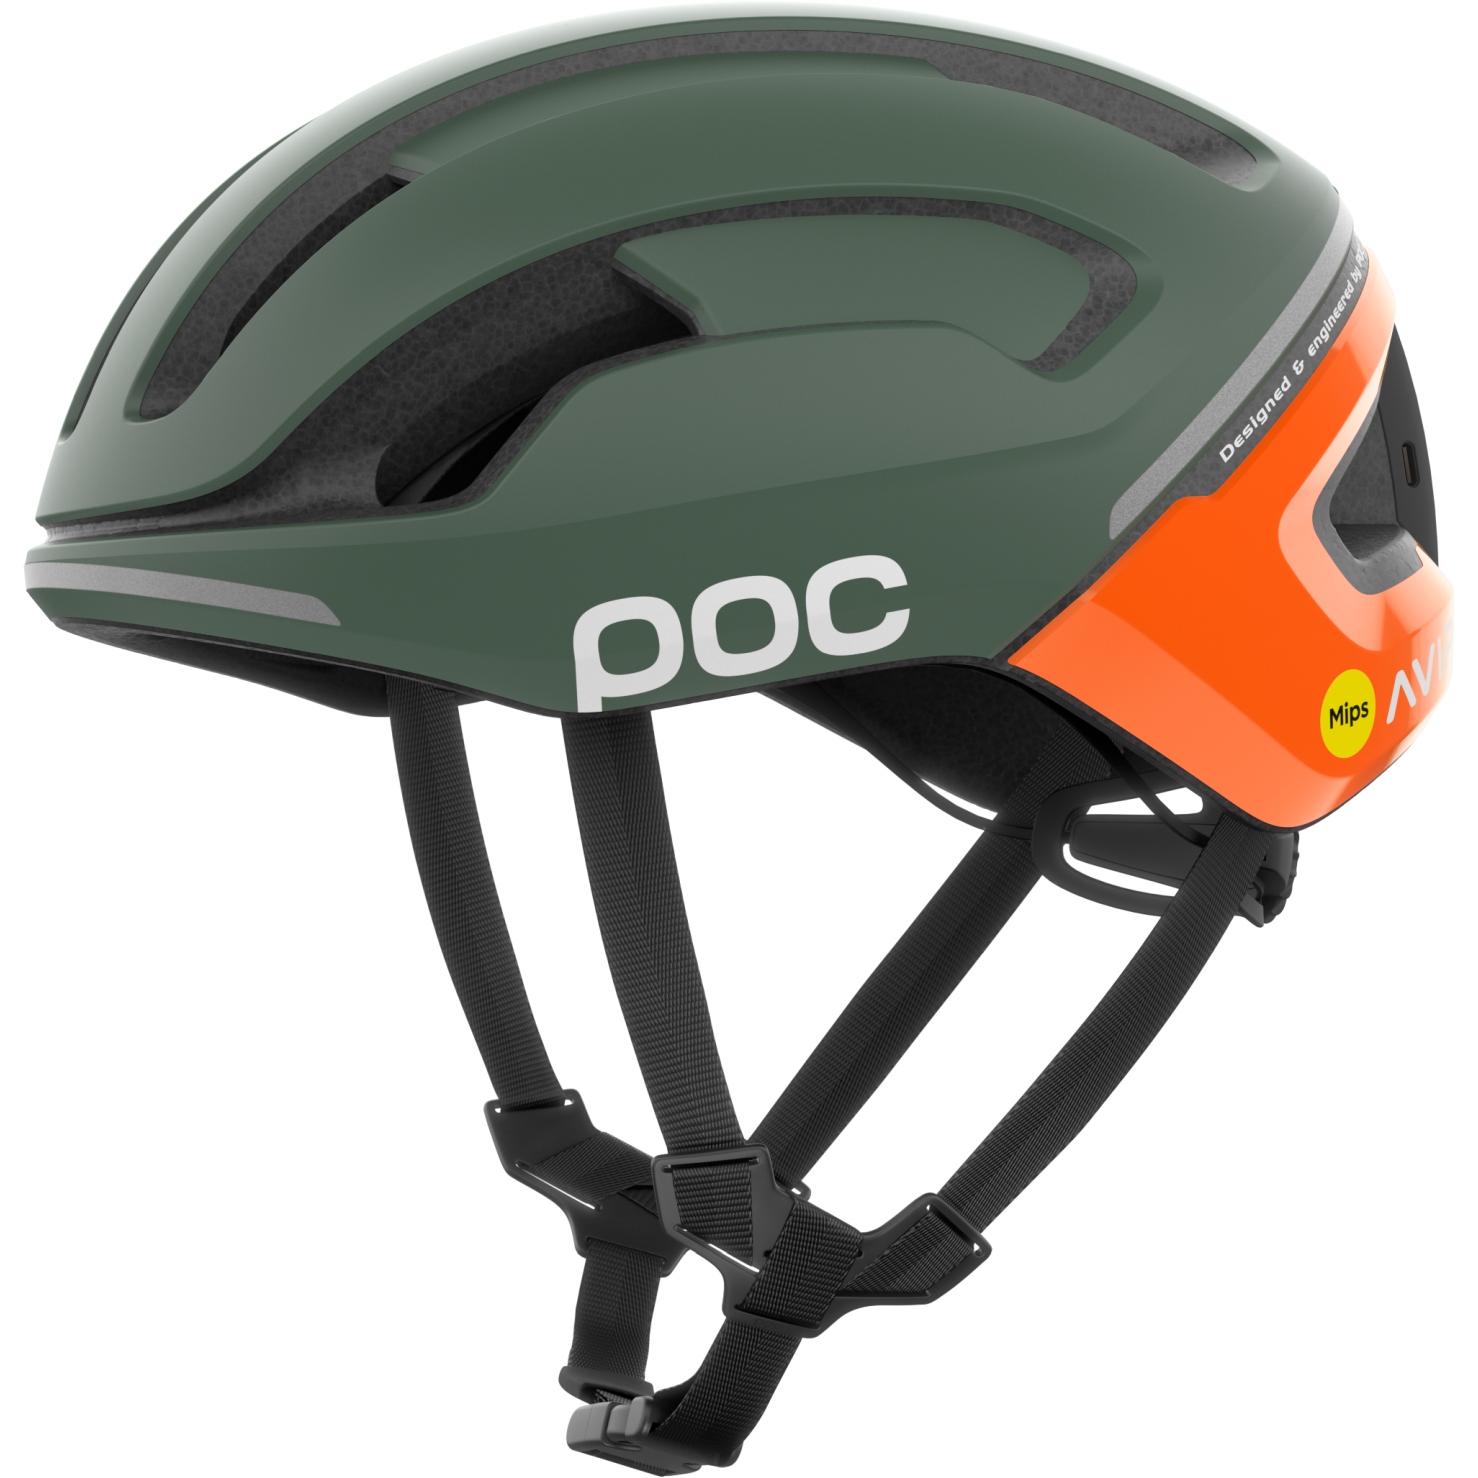 Produktbild von POC Omne Beacon MIPS Helm - 8632 Fluorescent Orange AVIP/Epidote Green Matt